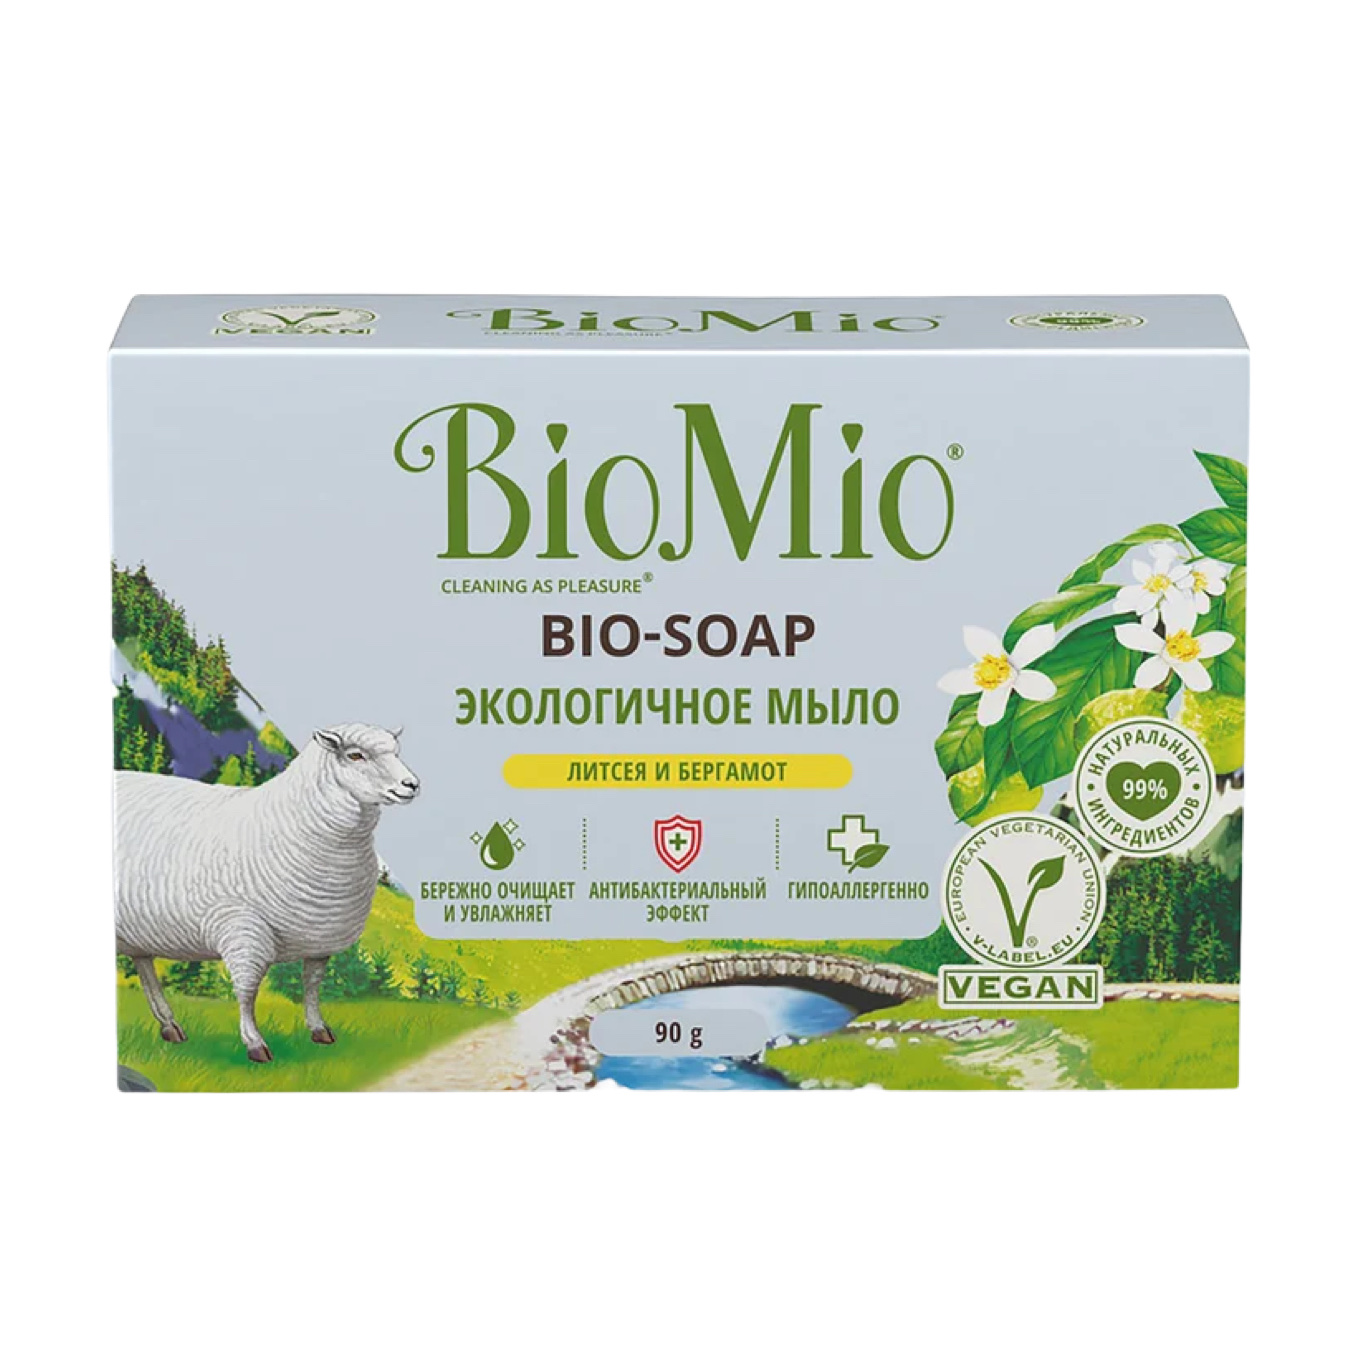 Мыло туалетное Литсея и бергамот SPLAT BioMio Bio-Soap 90гр